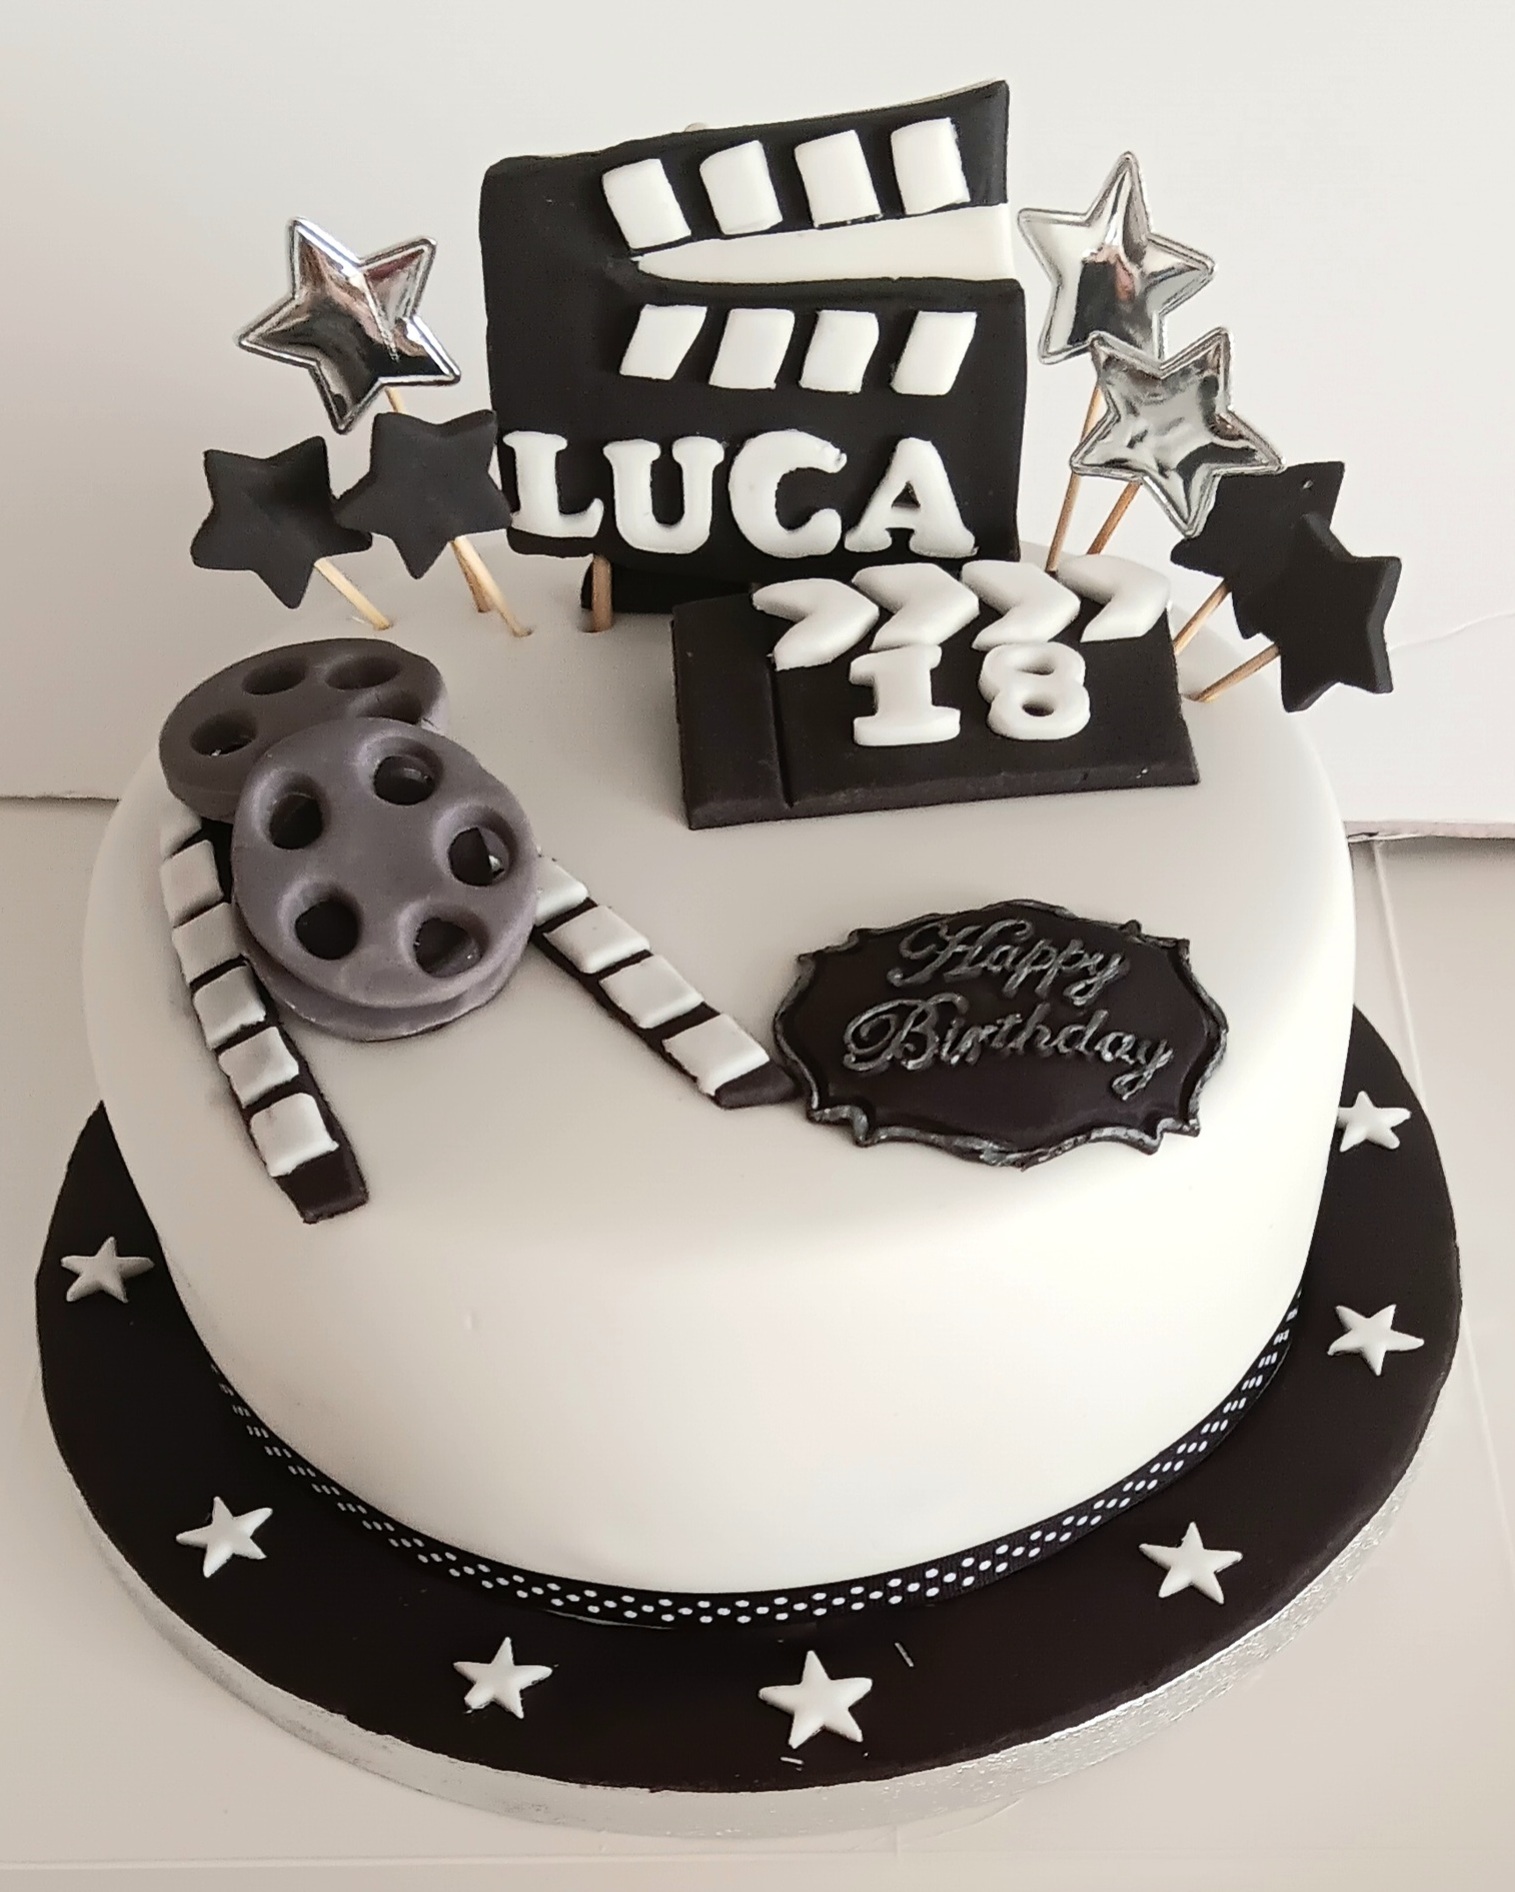 Film director inspired cake